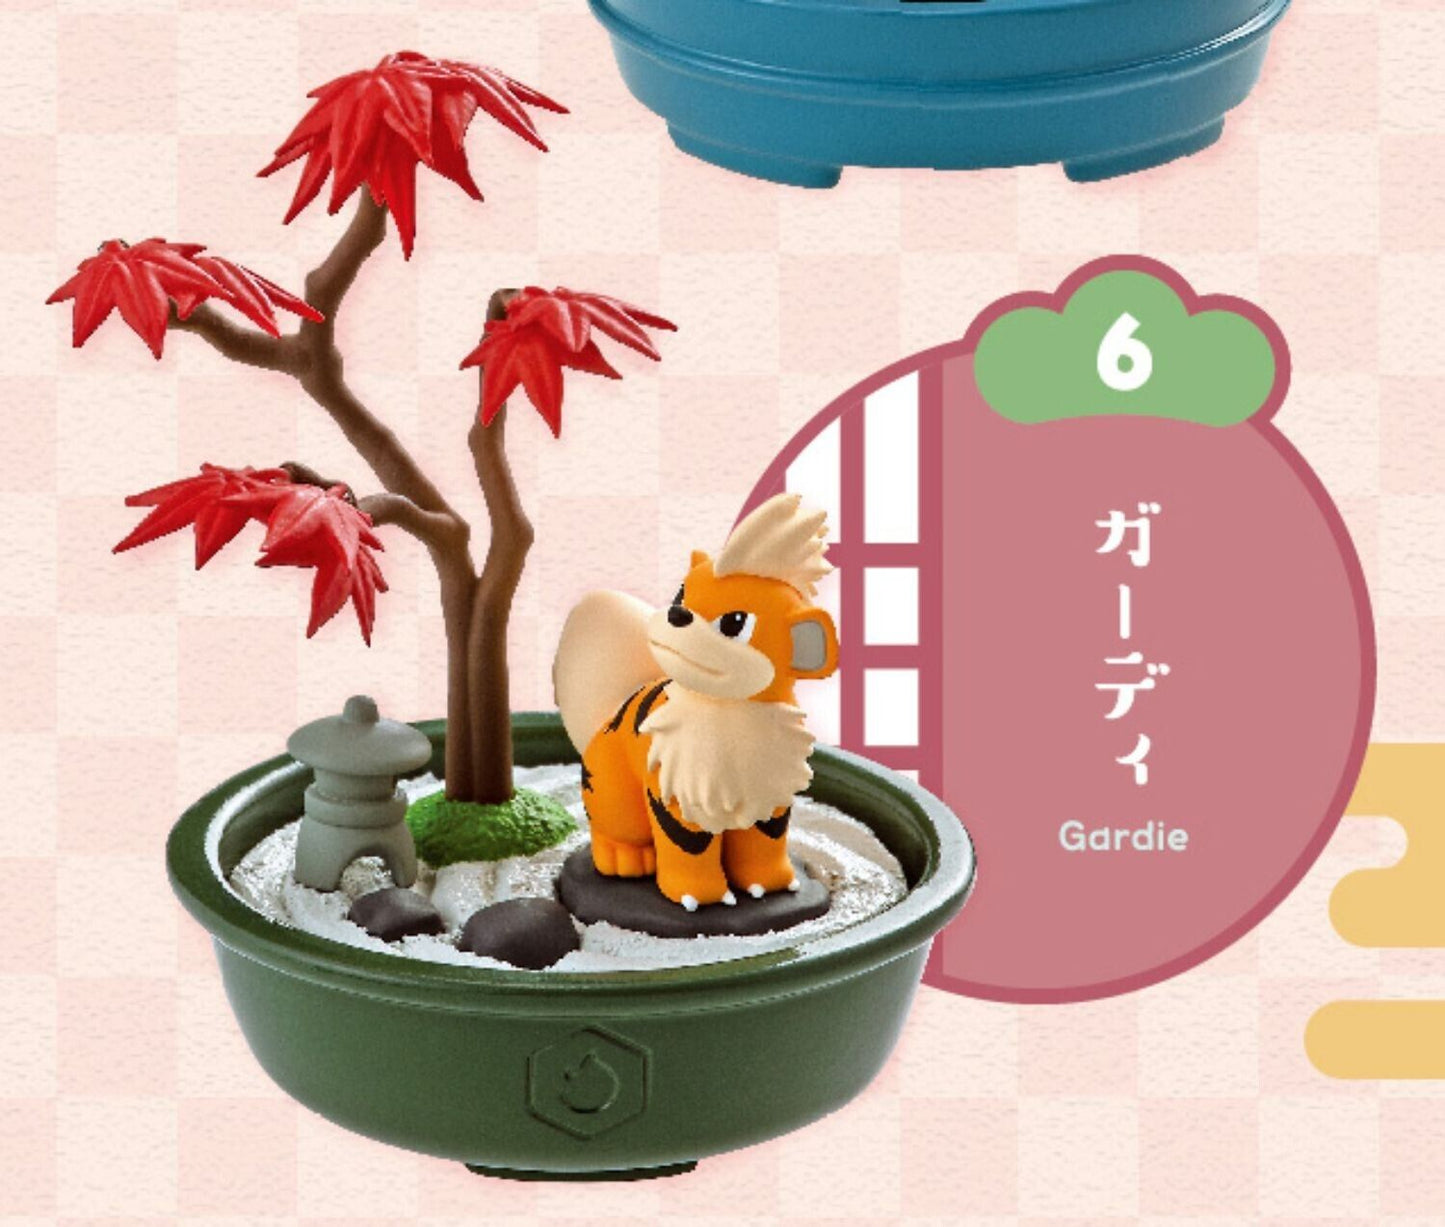 Re-Ment  Pokemon Pocket Bonsai 2 Seasons Story Mini Figure Full Set 6 pcs Rement